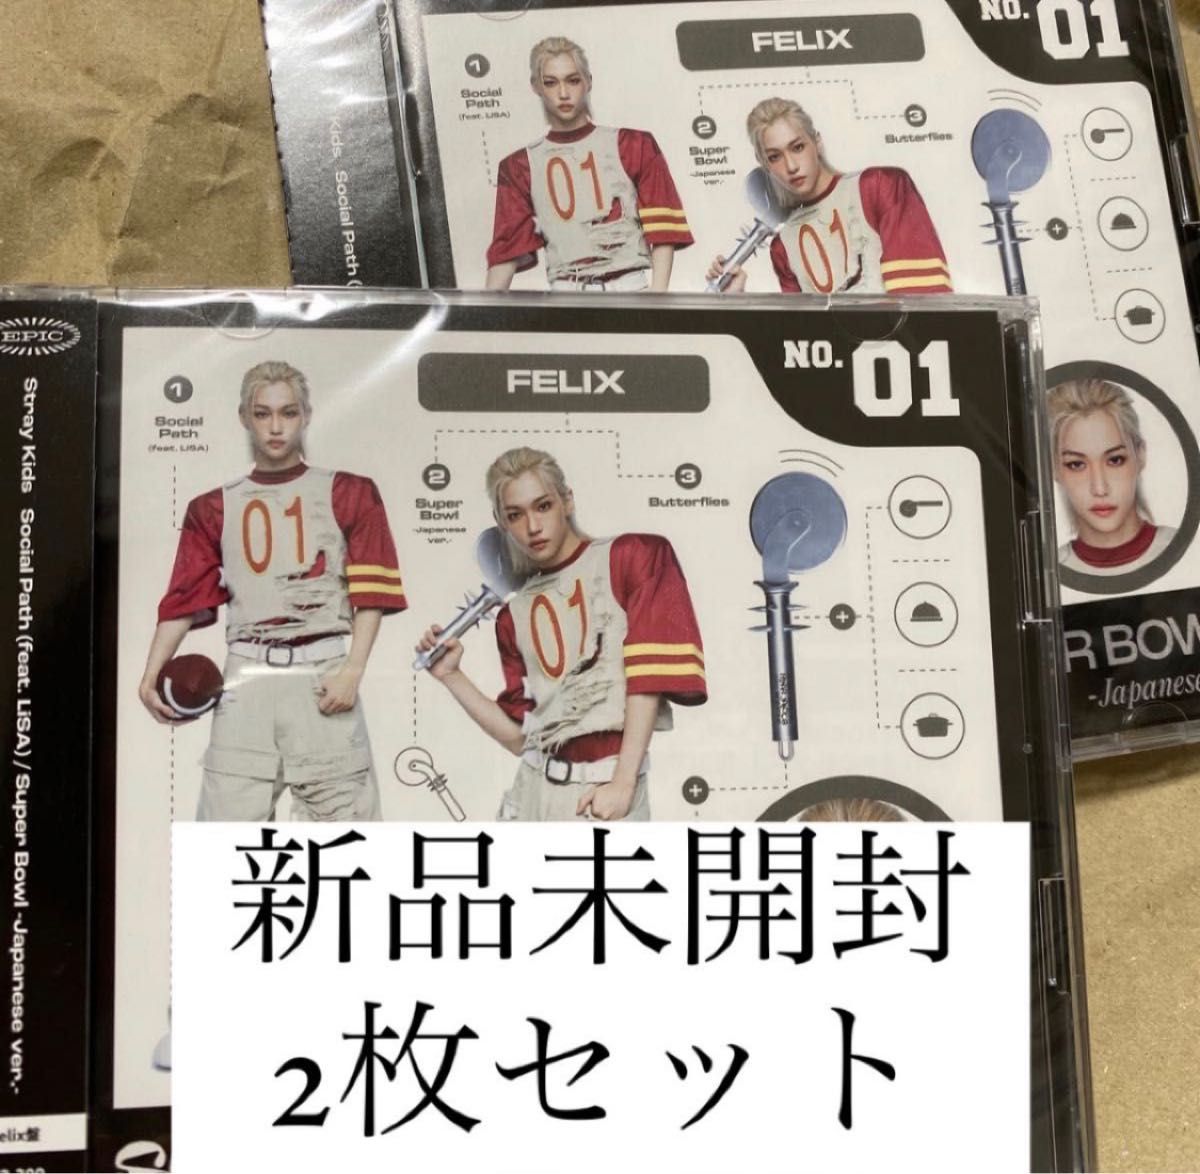 【フィリックス】【新品未開封】【2枚セット】Straykids FC限定盤 JAPAN 1st EP social path